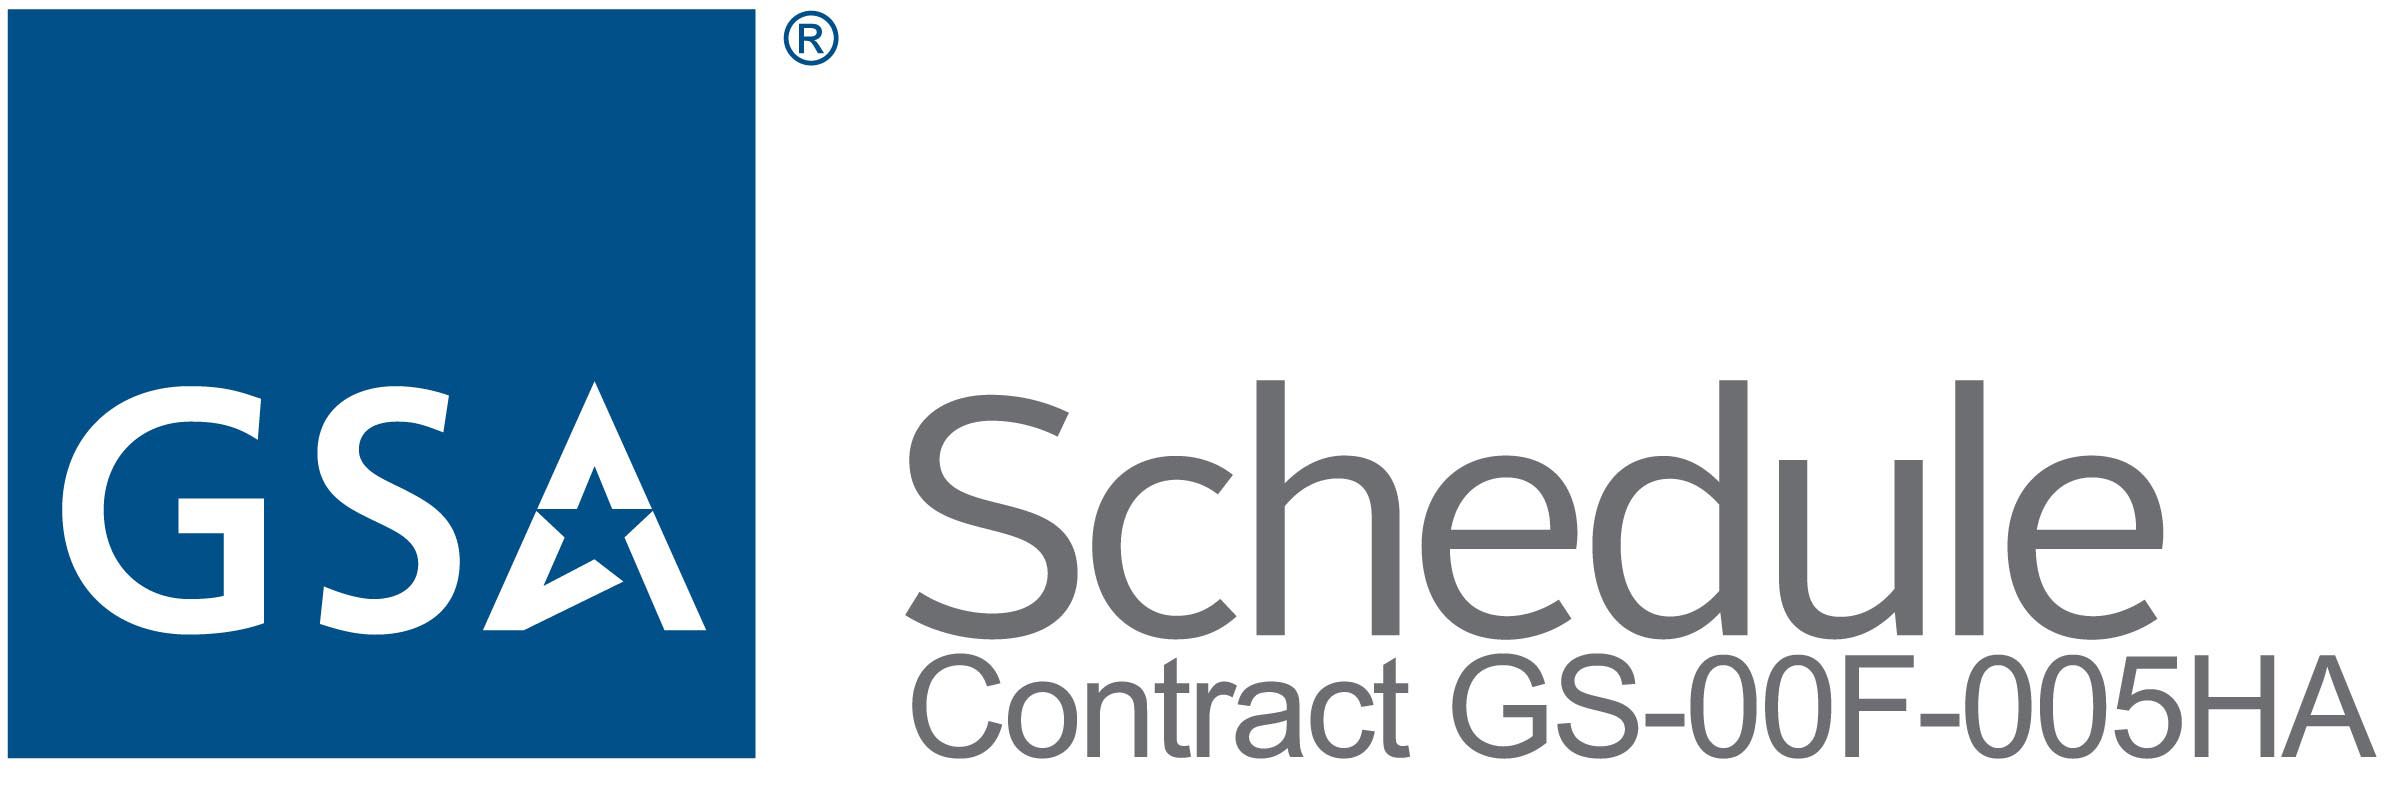 GSA-Schedule_Contract_Number.jpg